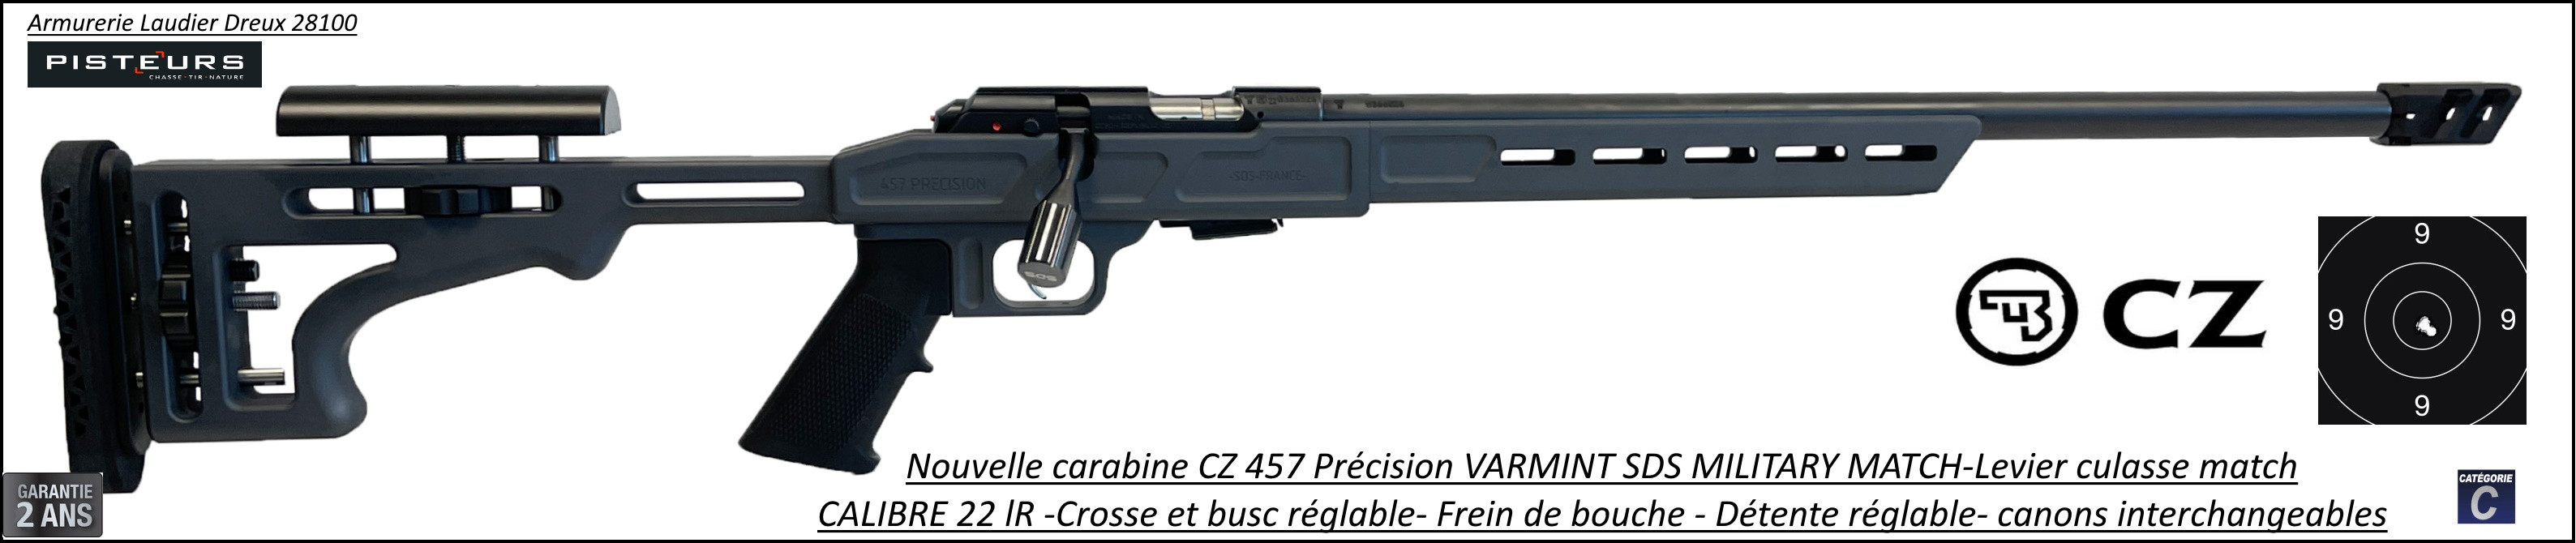 Carabine CZ Mod 457 Varmint Tactical  Précision SDS Military Calibre 22Lr Répétition -Promotion-Ref-786469